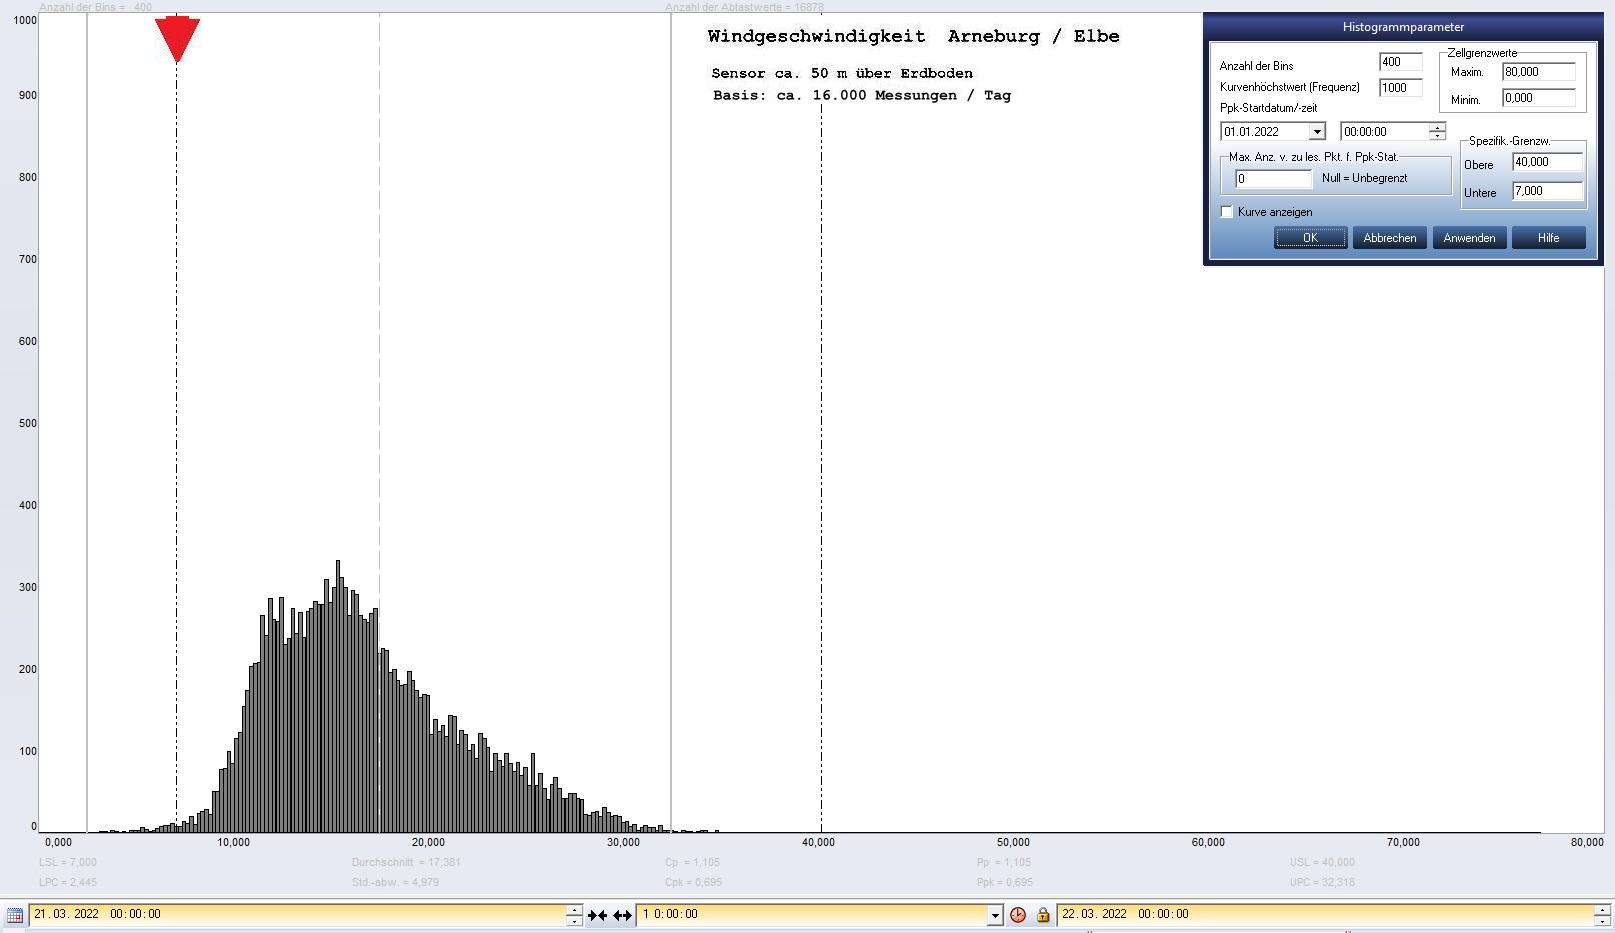 Arneburg Tages-Histogramm Winddaten, 21.03.2022
  Histogramm, Sensor auf Gebude, ca. 50 m ber Erdboden, Basis: 5s-Aufzeichnung